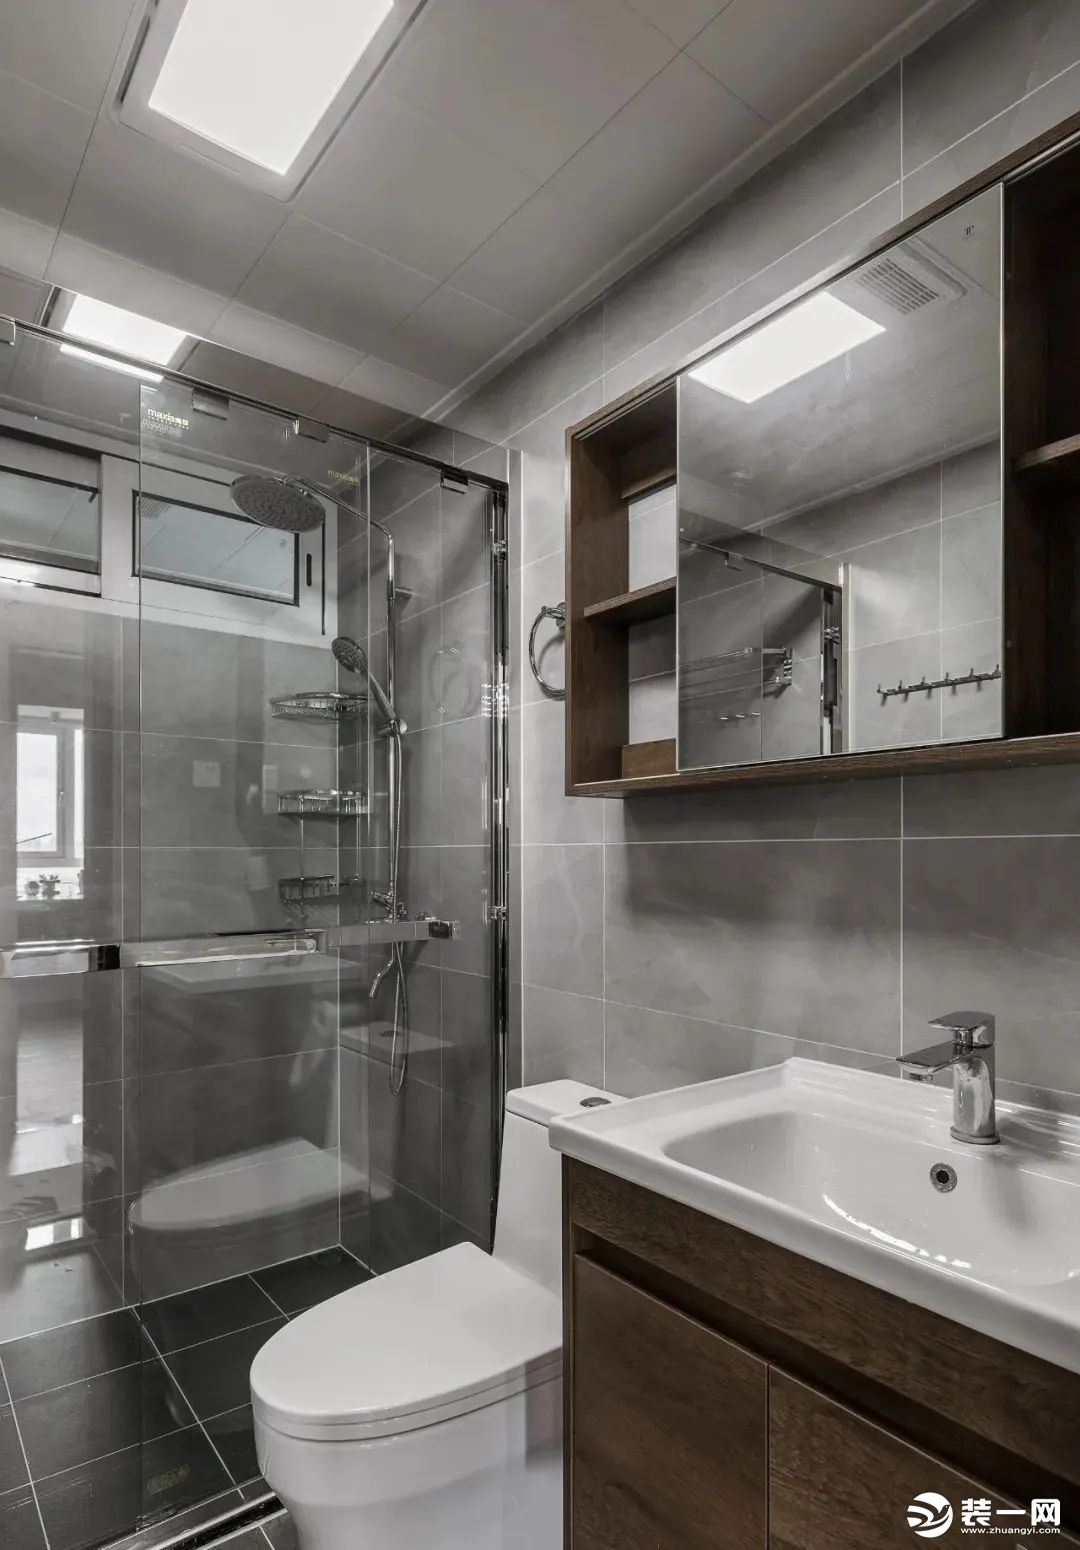 卫生间用浅灰色的墙砖搭配木色的浴室柜，灰+木是经典搭配。镜柜的使用，满足了一家三口日常卫生间的储物需